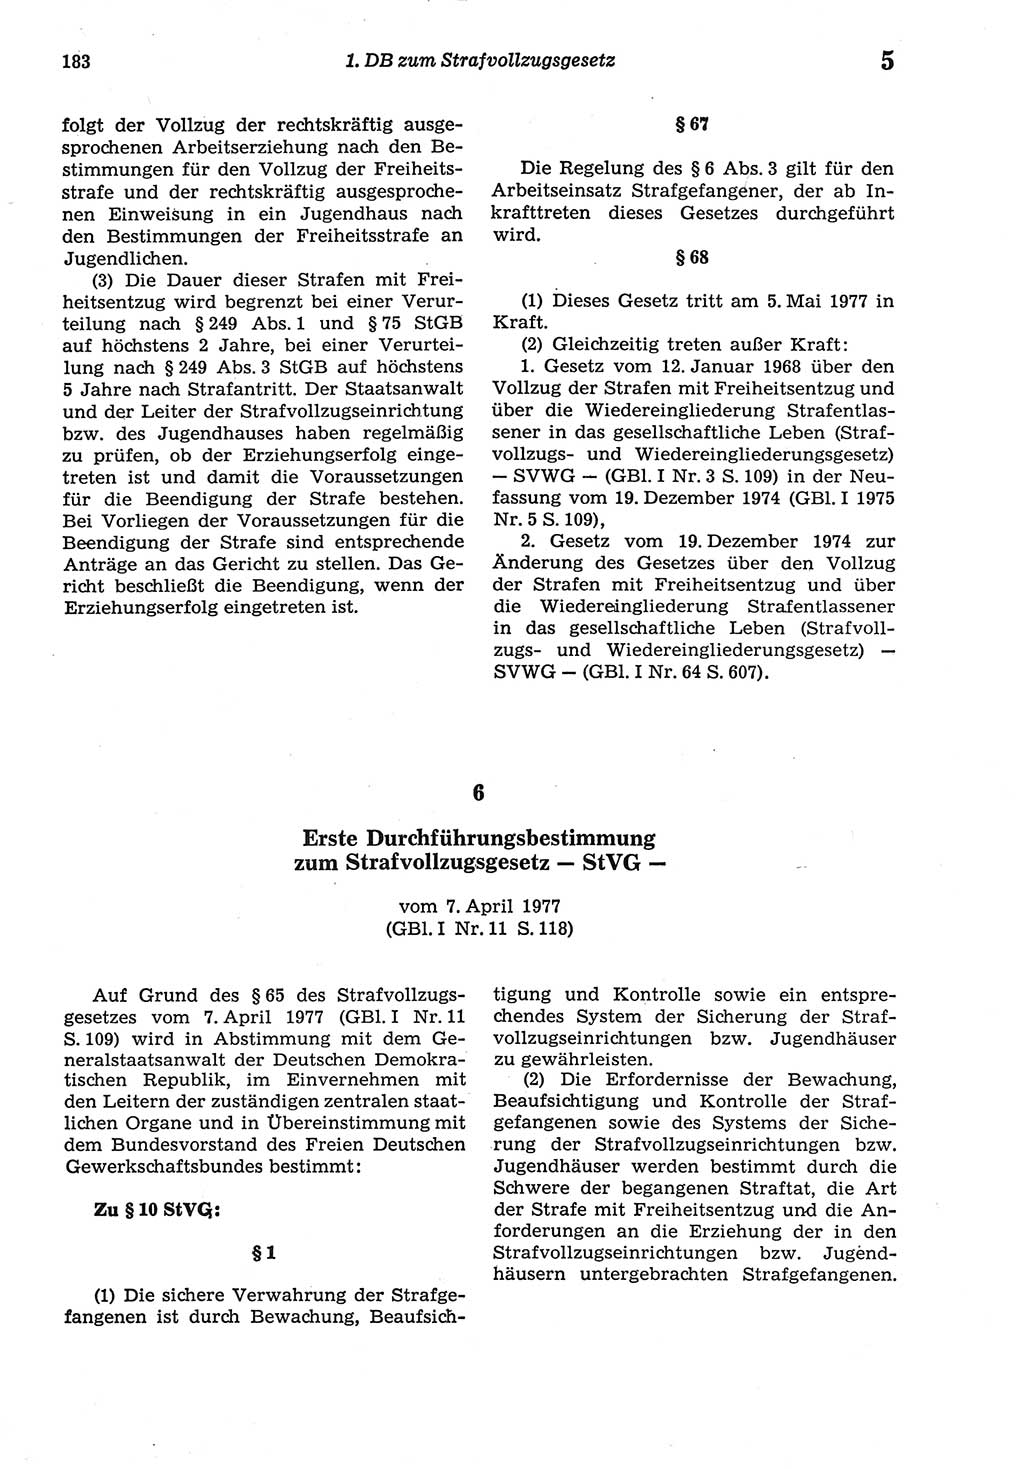 Strafprozeßordnung (StPO) der Deutschen Demokratischen Republik (DDR) sowie angrenzende Gesetze und Bestimmungen 1977, Seite 183 (StPO DDR Ges. Best. 1977, S. 183)